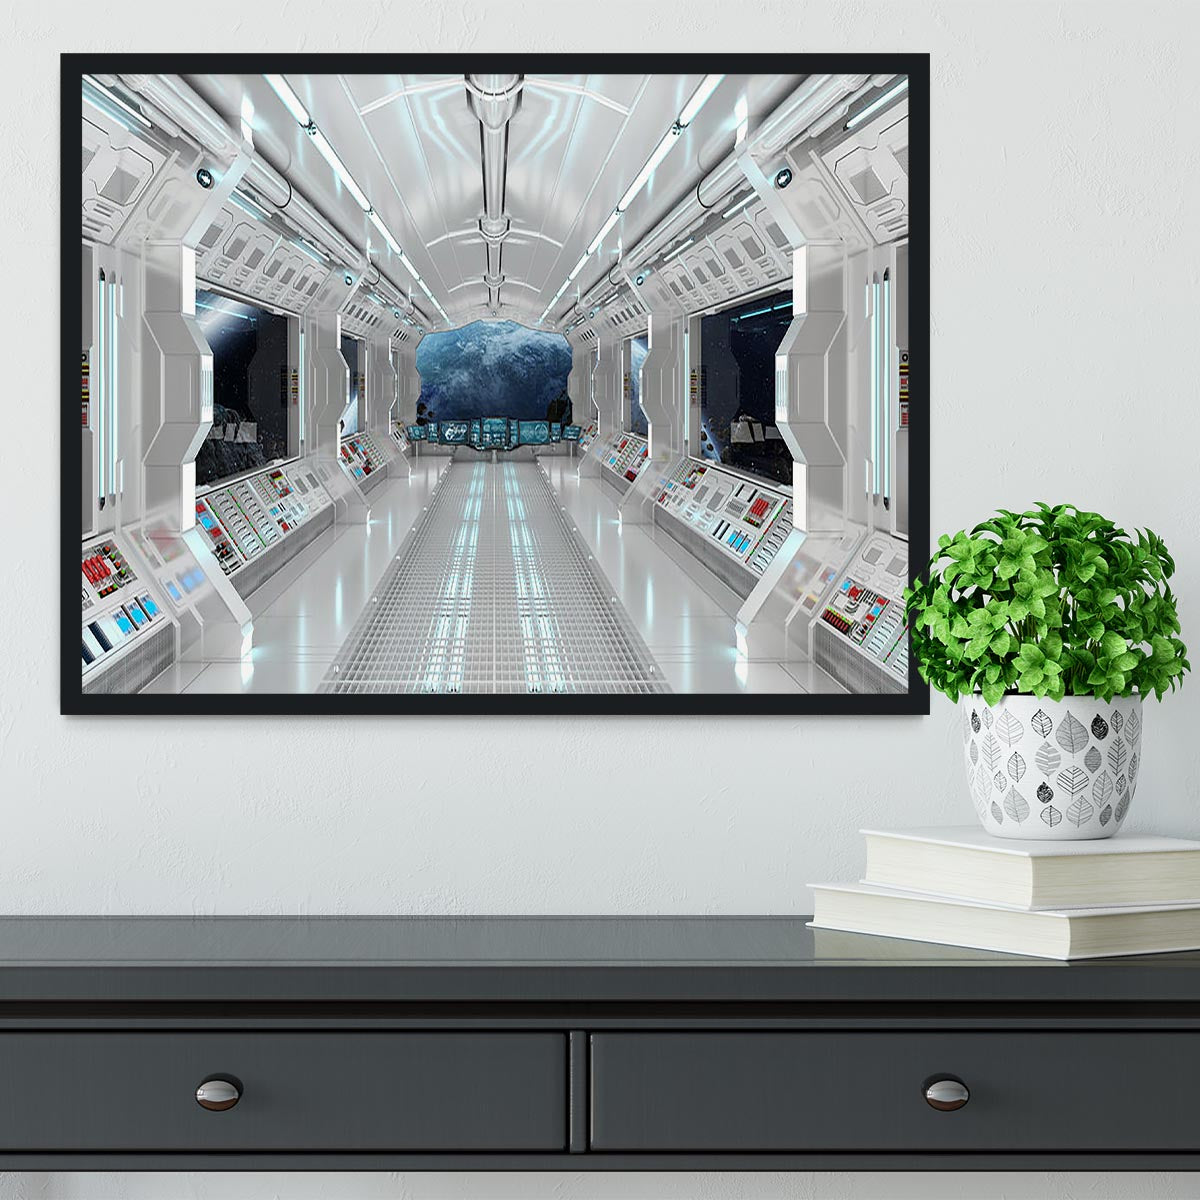 Inside Space Shuttle Framed Print - Canvas Art Rocks - 2